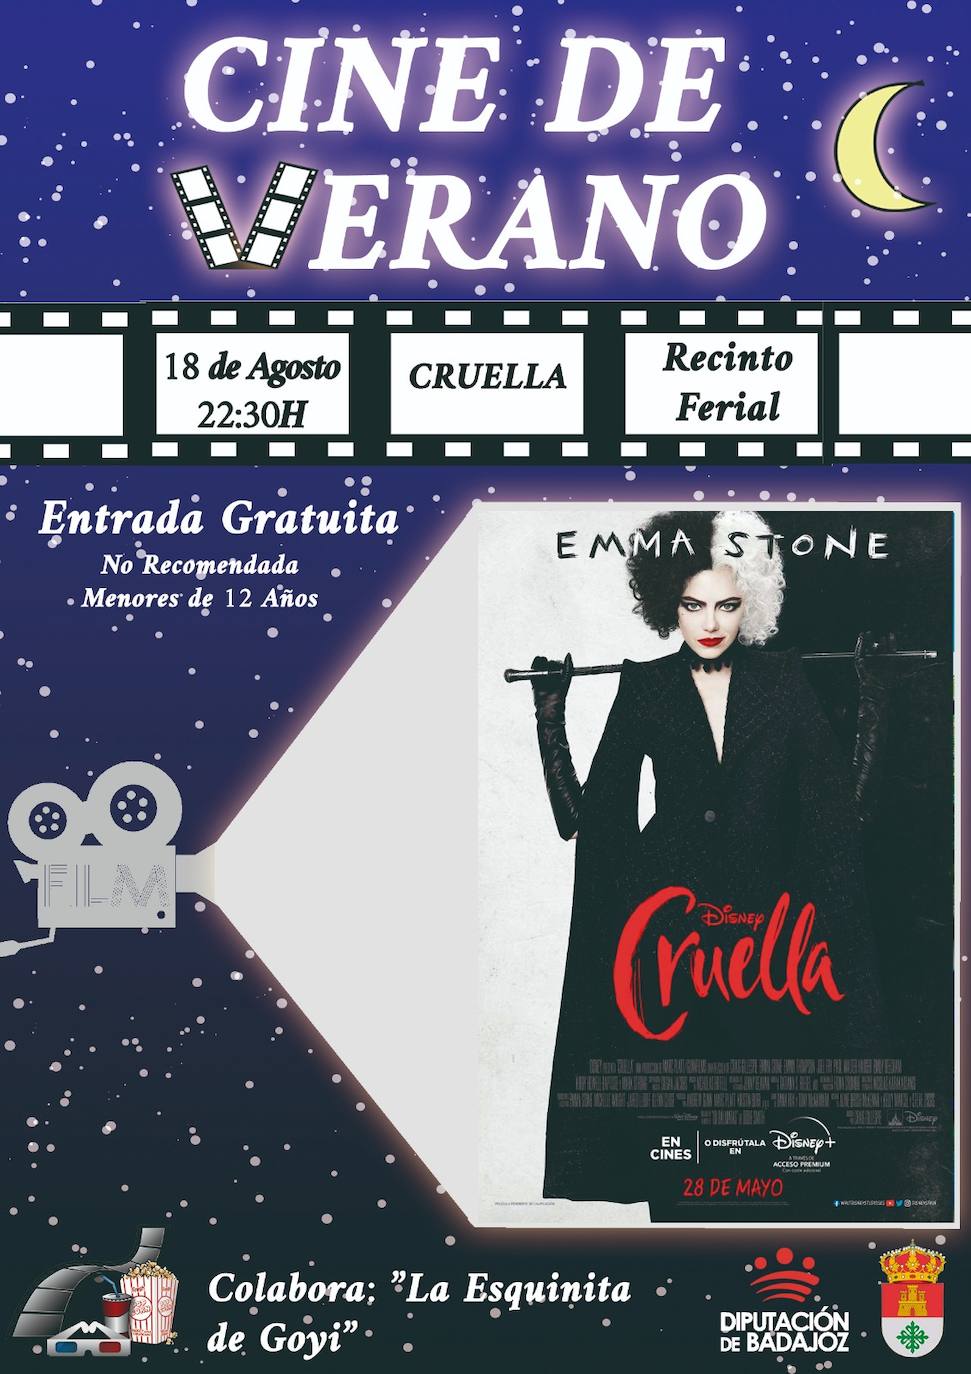 El cine al aire libre del ferial acoge hoy la proyección de la película 'Cruella'